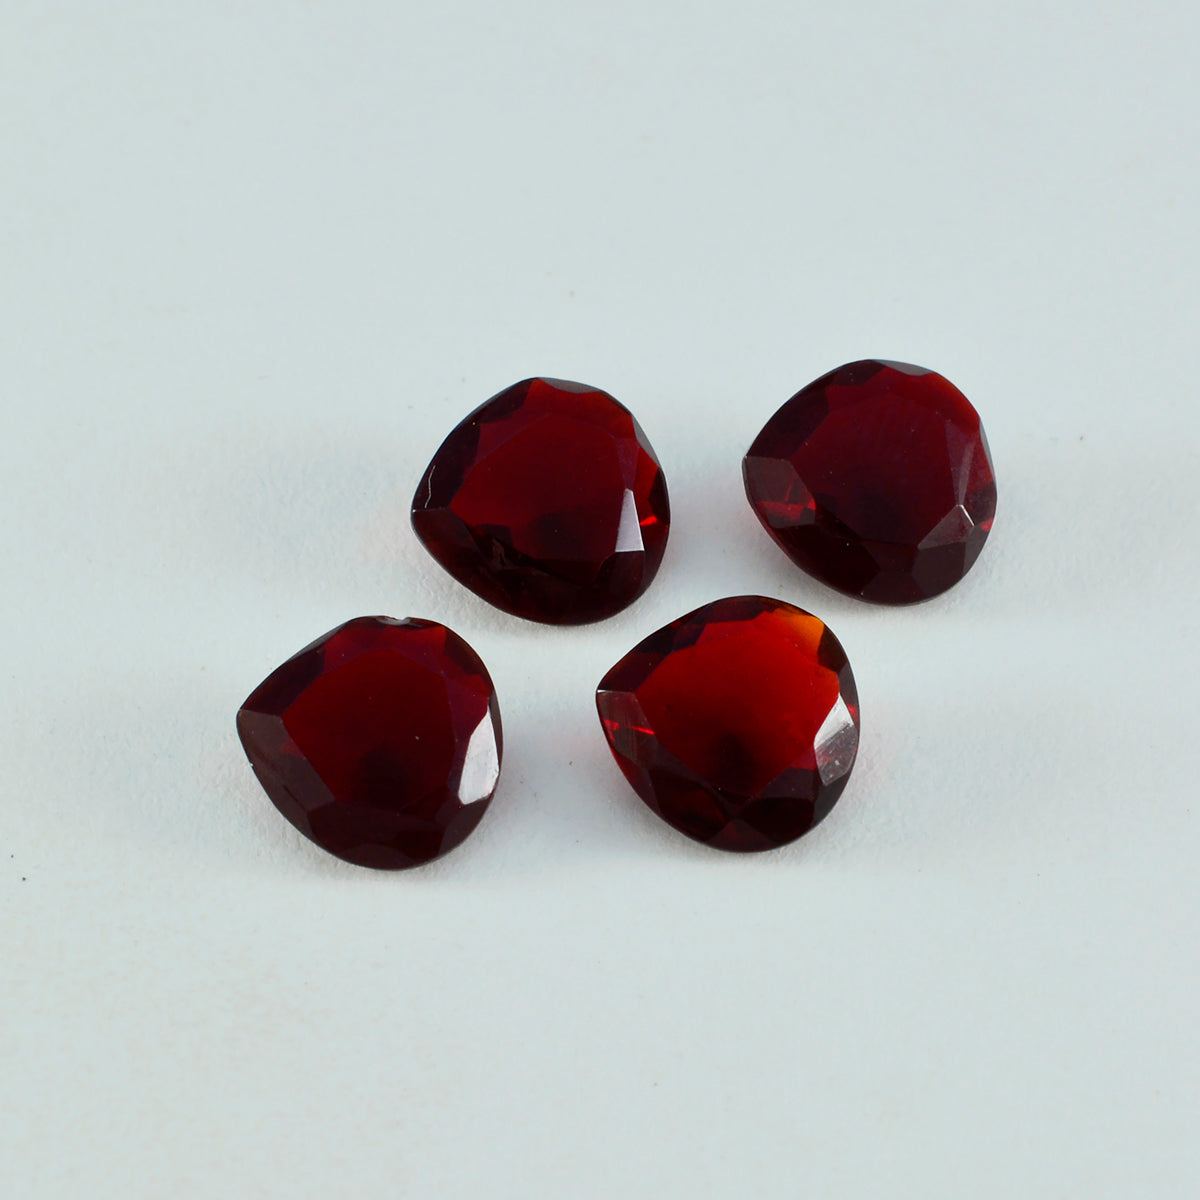 riyogems 1pz rubino rosso cz sfaccettato 11x11 mm a forma di cuore pietra preziosa sciolta di qualità straordinaria